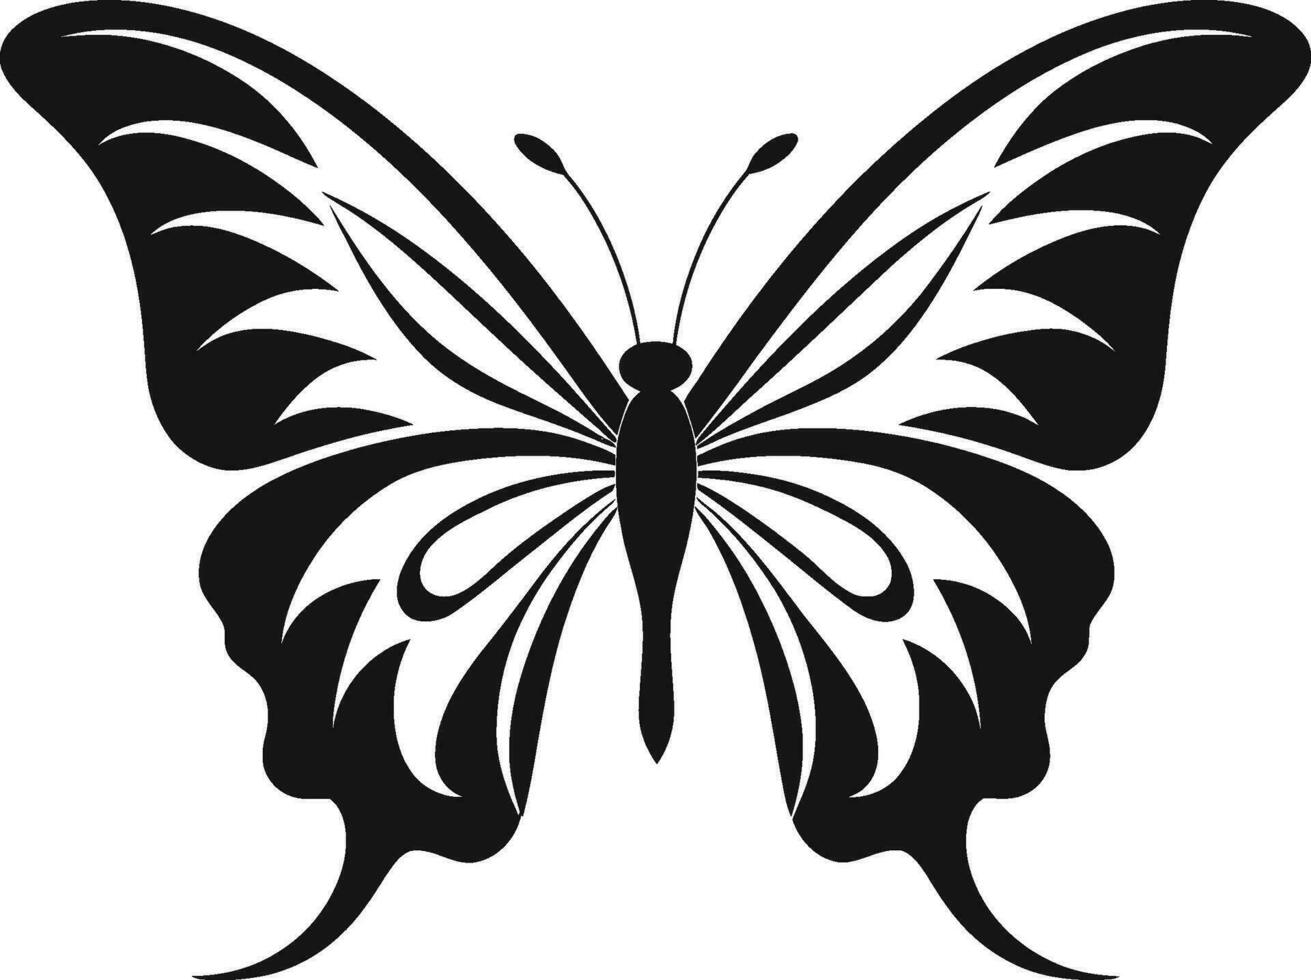 mariposa logo diseño en noir gracia y libertad pulcro y elegante negro mariposa icono vector